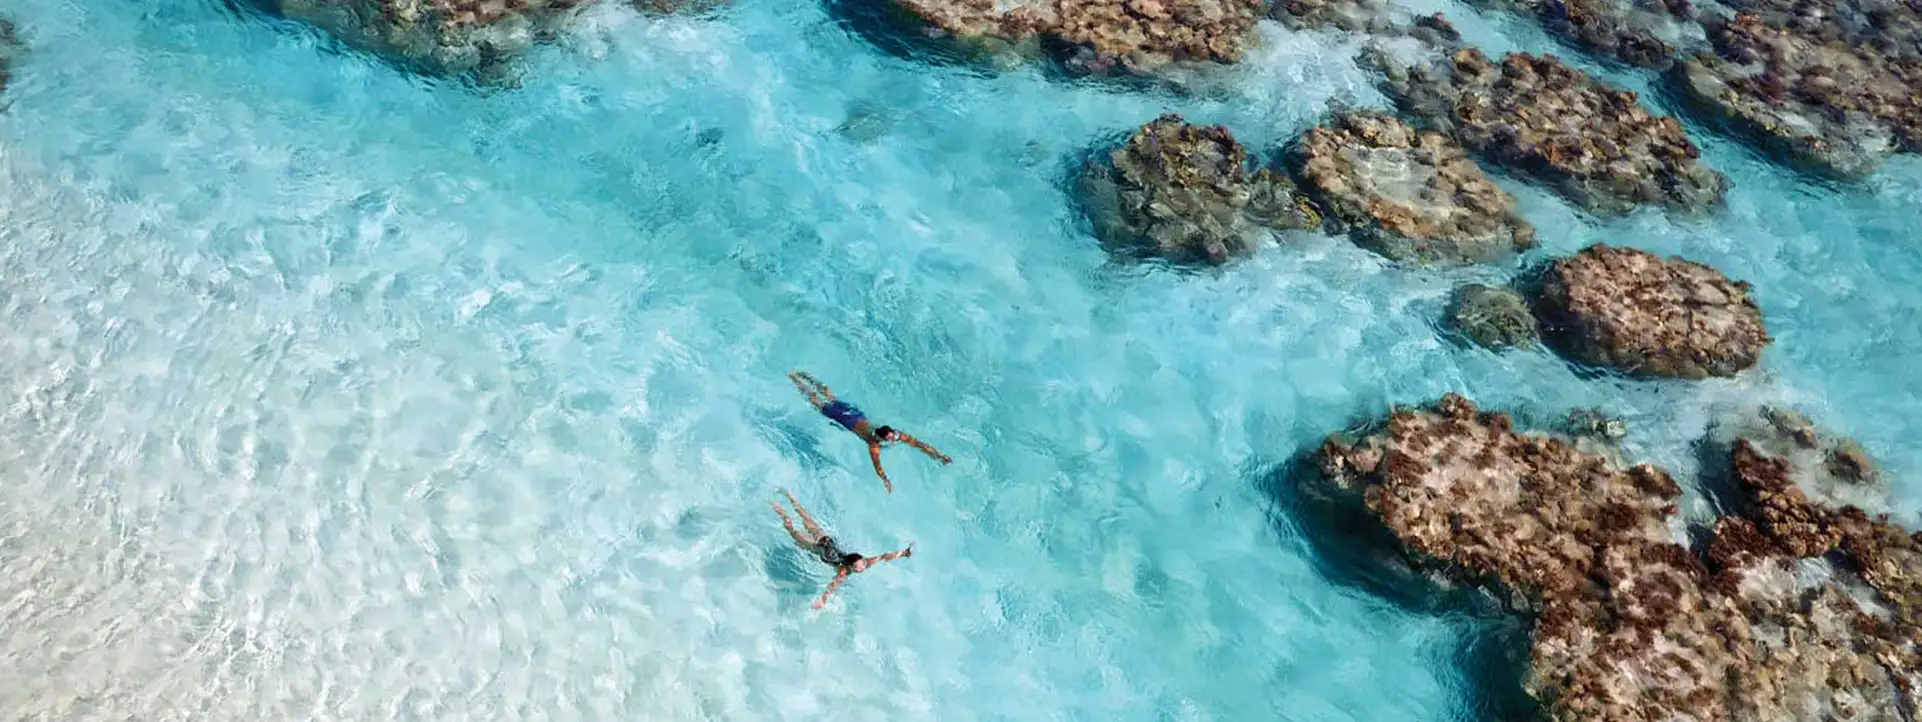 THE-BRANDO-Tahiti-honeymoon-couple-swimming-in-lagoon-aerial-